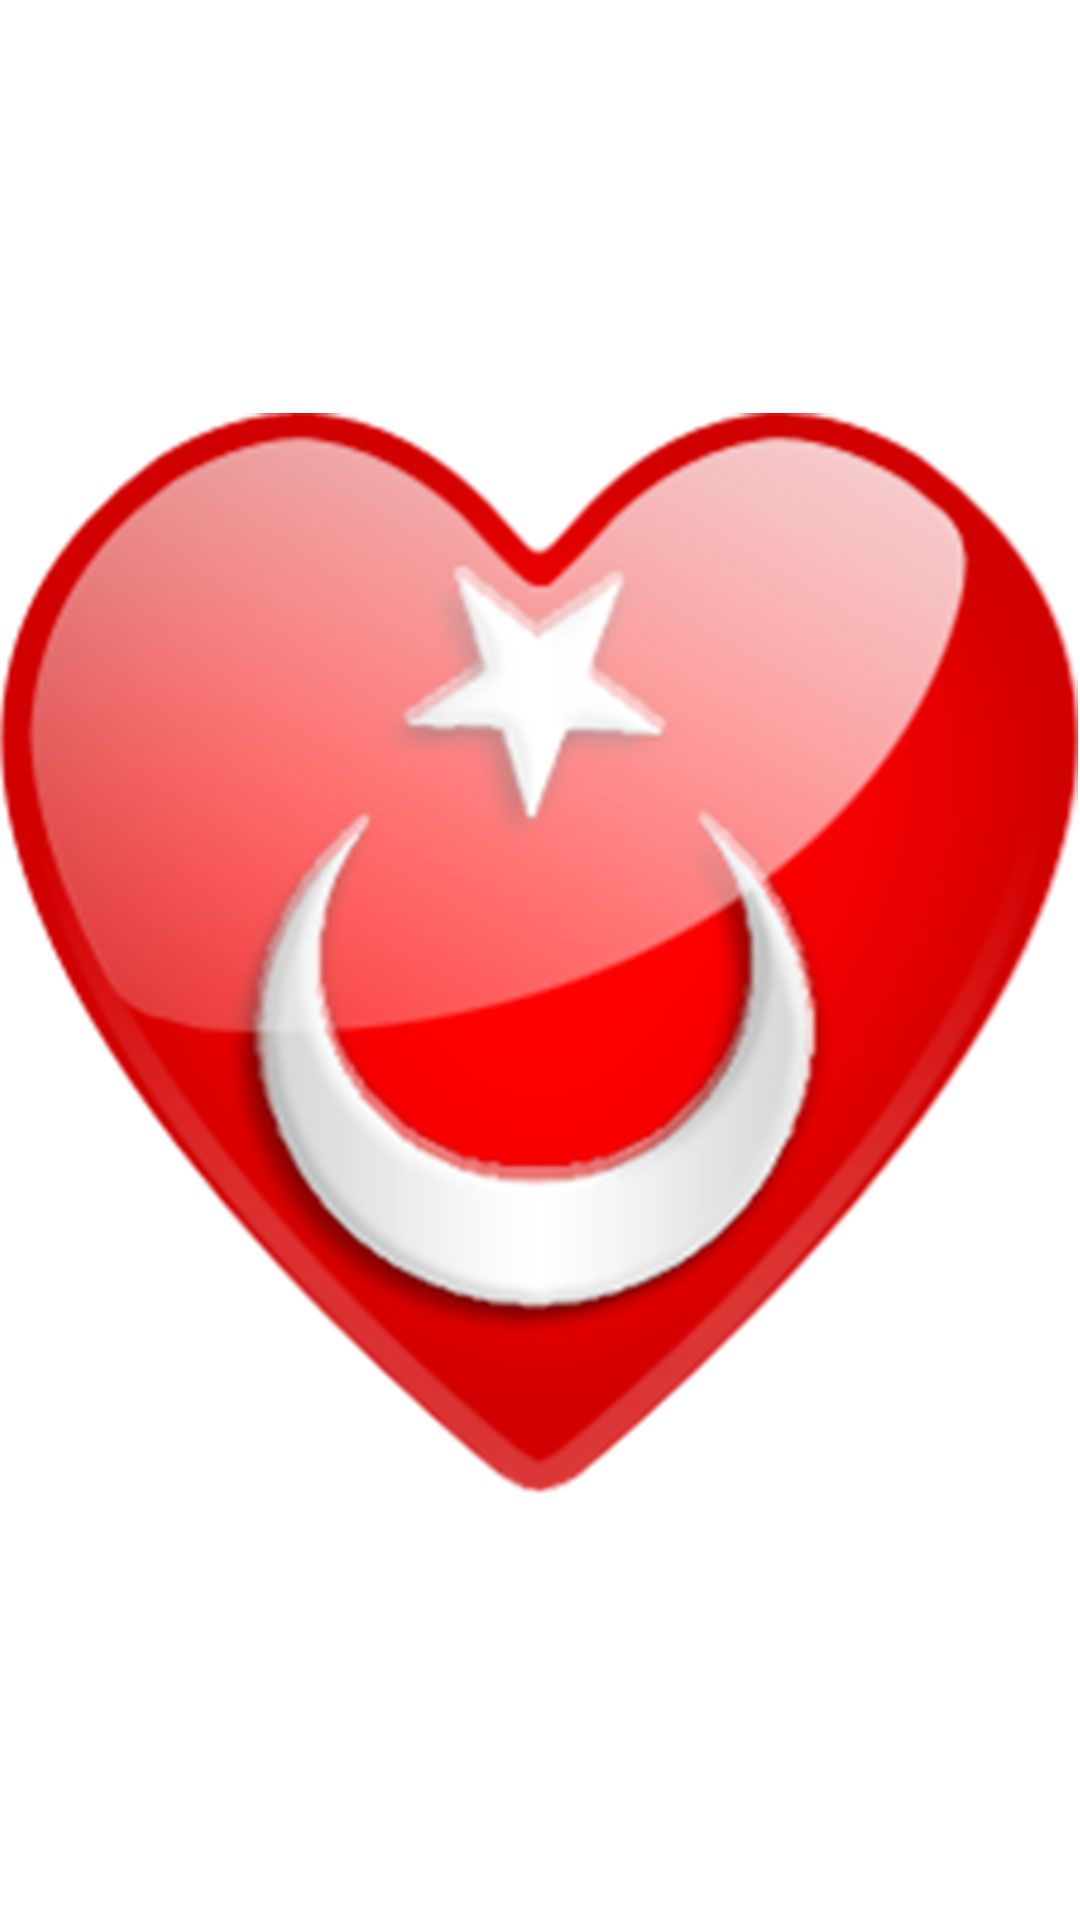 Kalpli turk bayragi 7